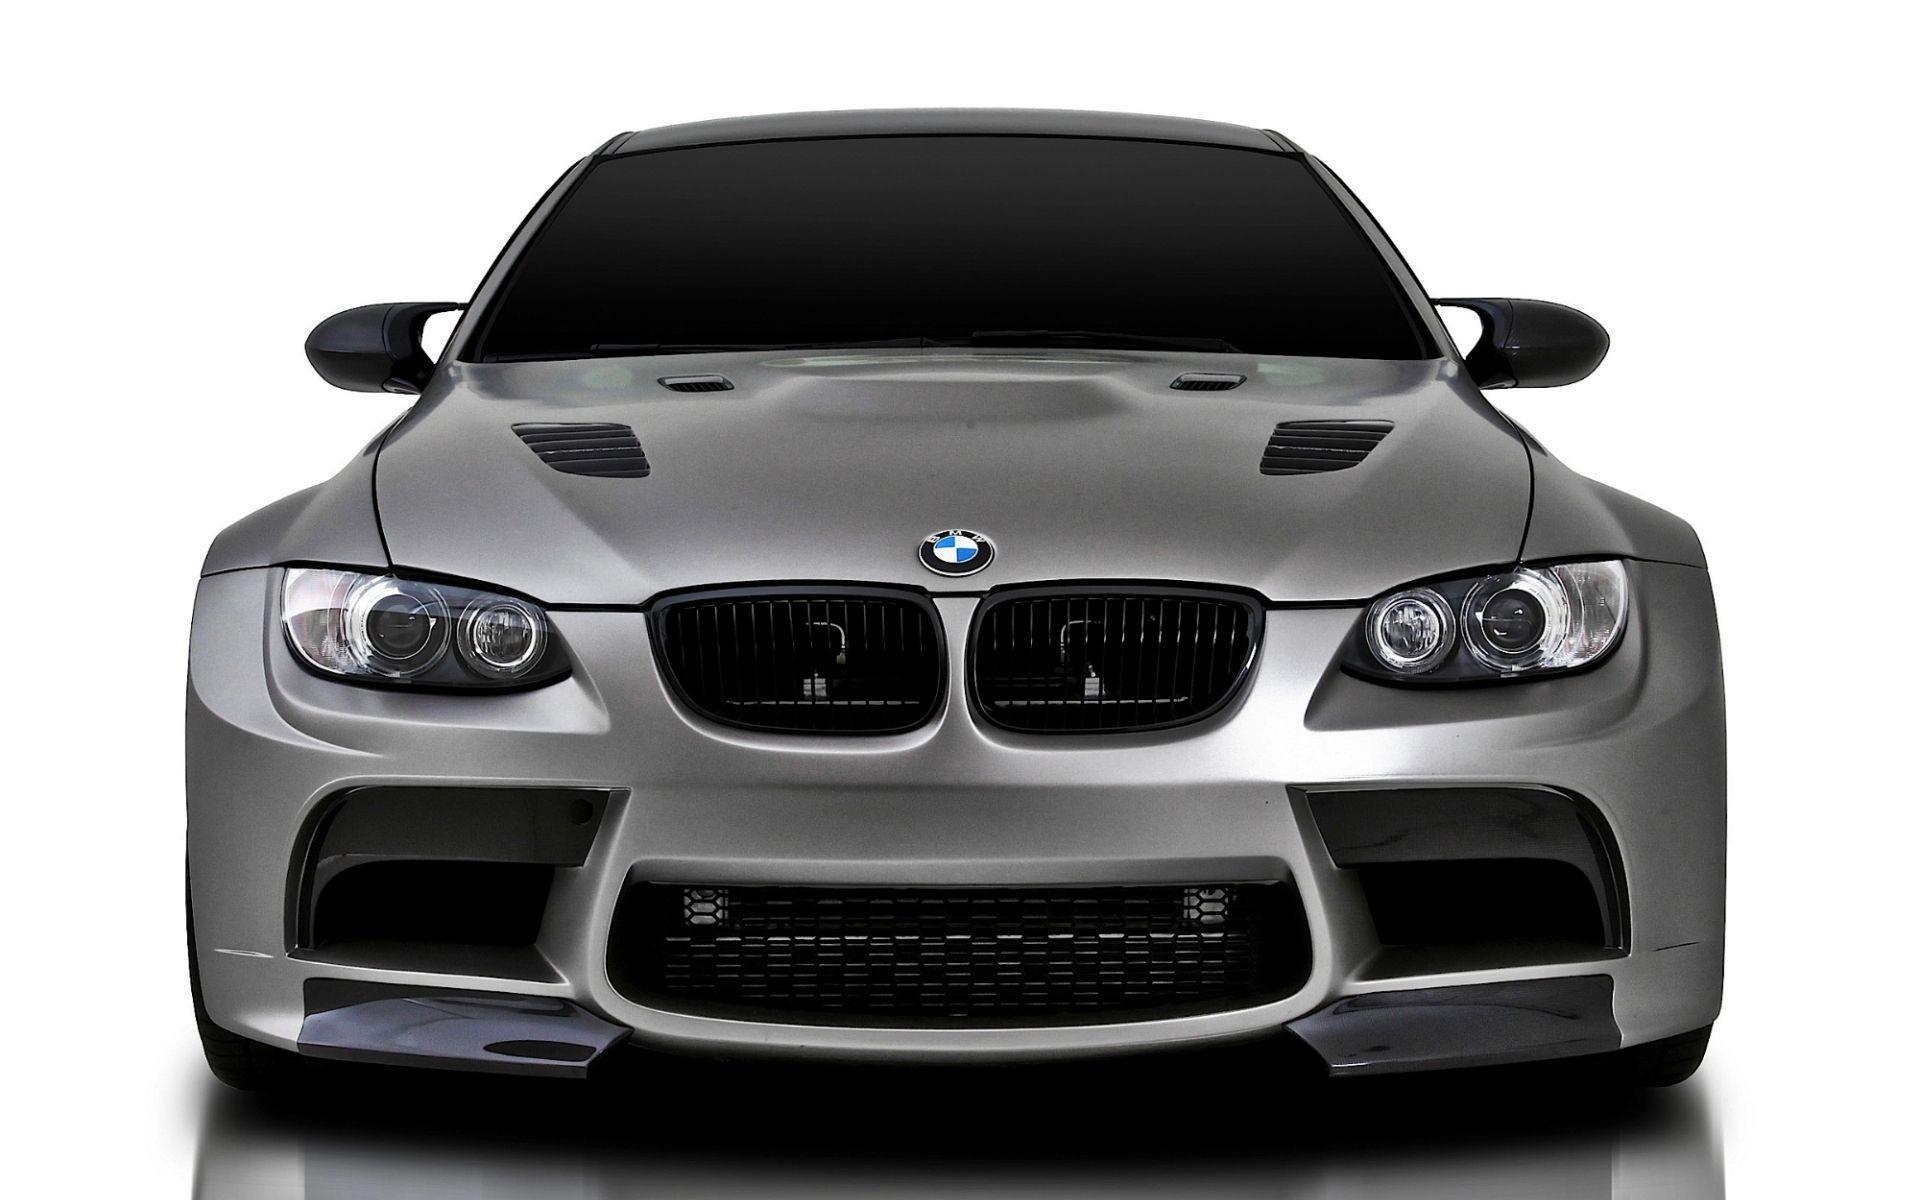 BMW M3 wallpaper. BMW M3 wallpaper